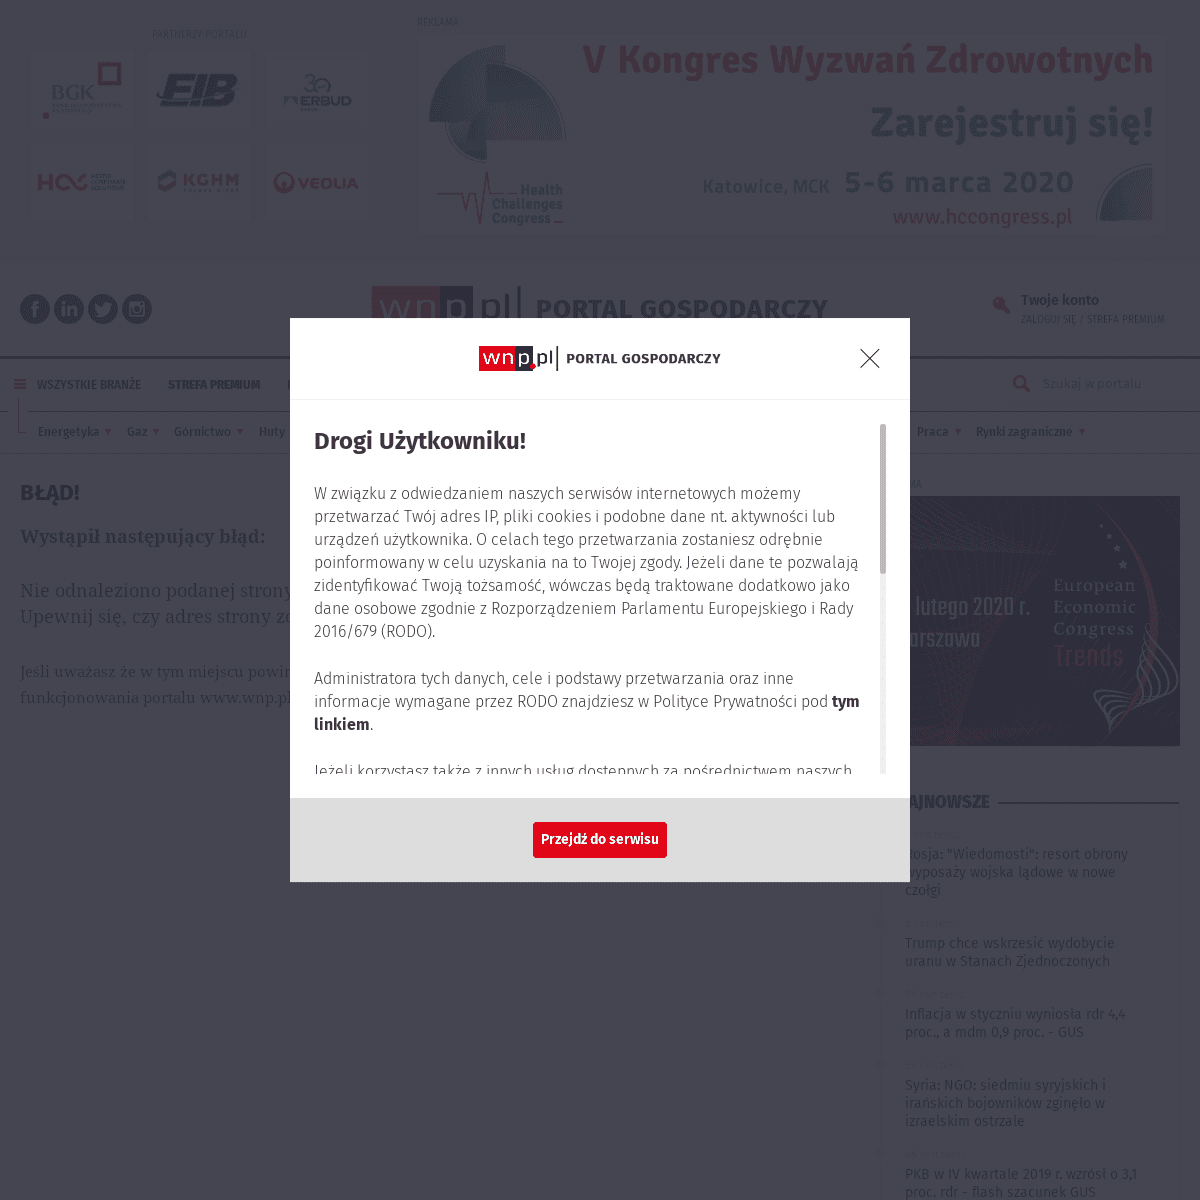 A complete backup of www.wnp.pl/parlamentarny/spoleczenstwo/zona-i-syn-zbigniewa-stonogi-zatrzymani-aktualizacja